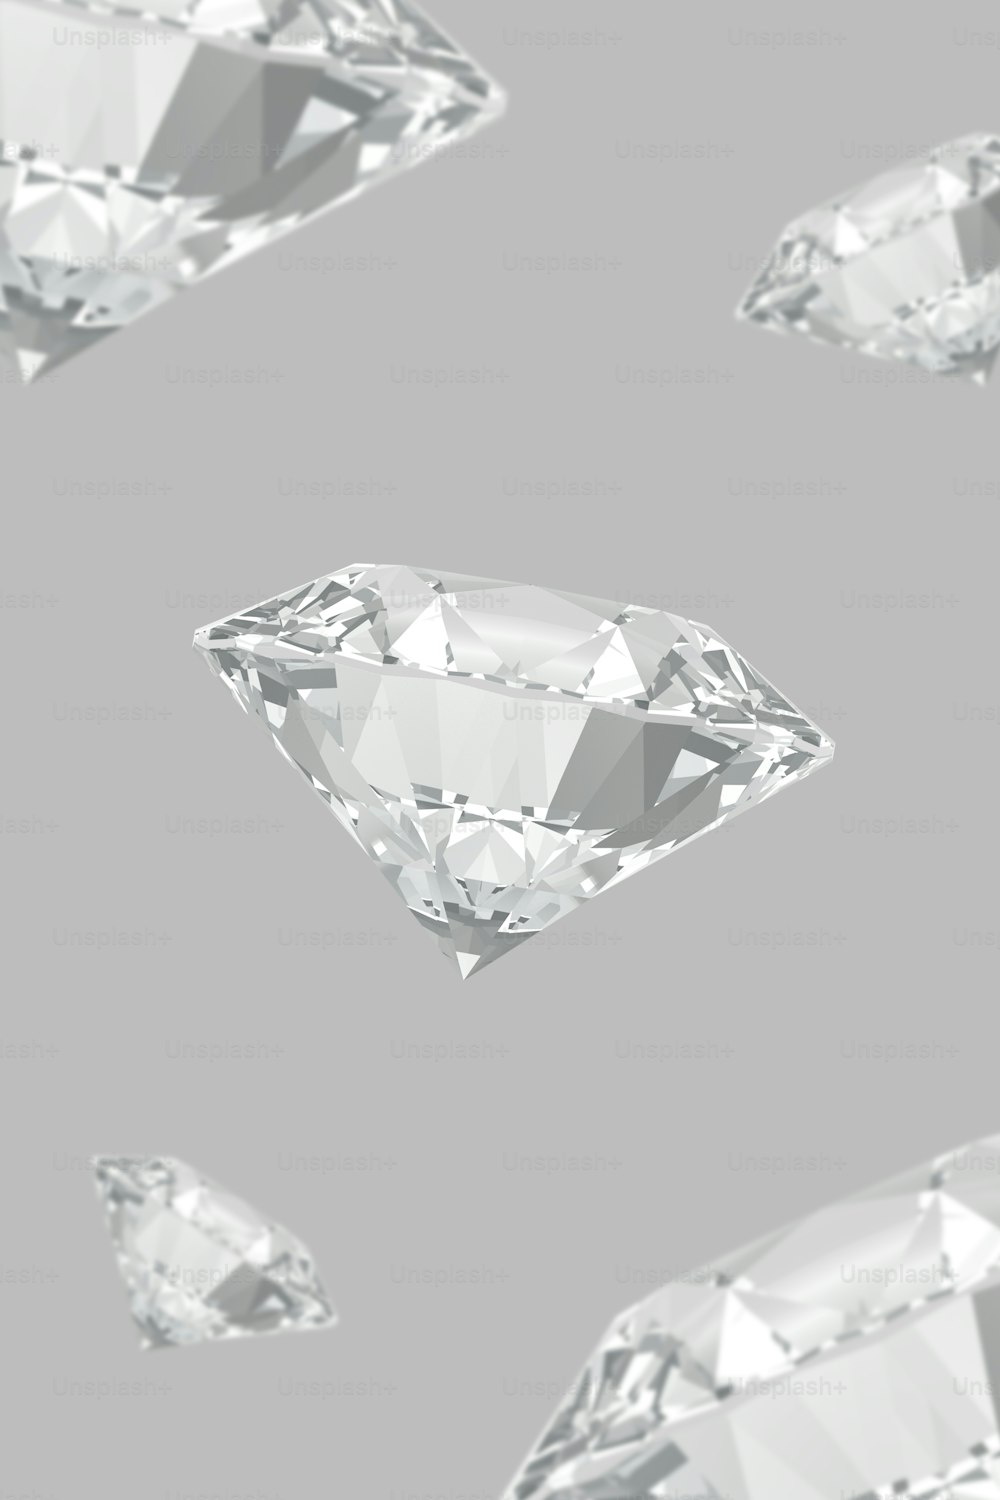 Eine Gruppe von Diamanten, die durch die Luft fliegen